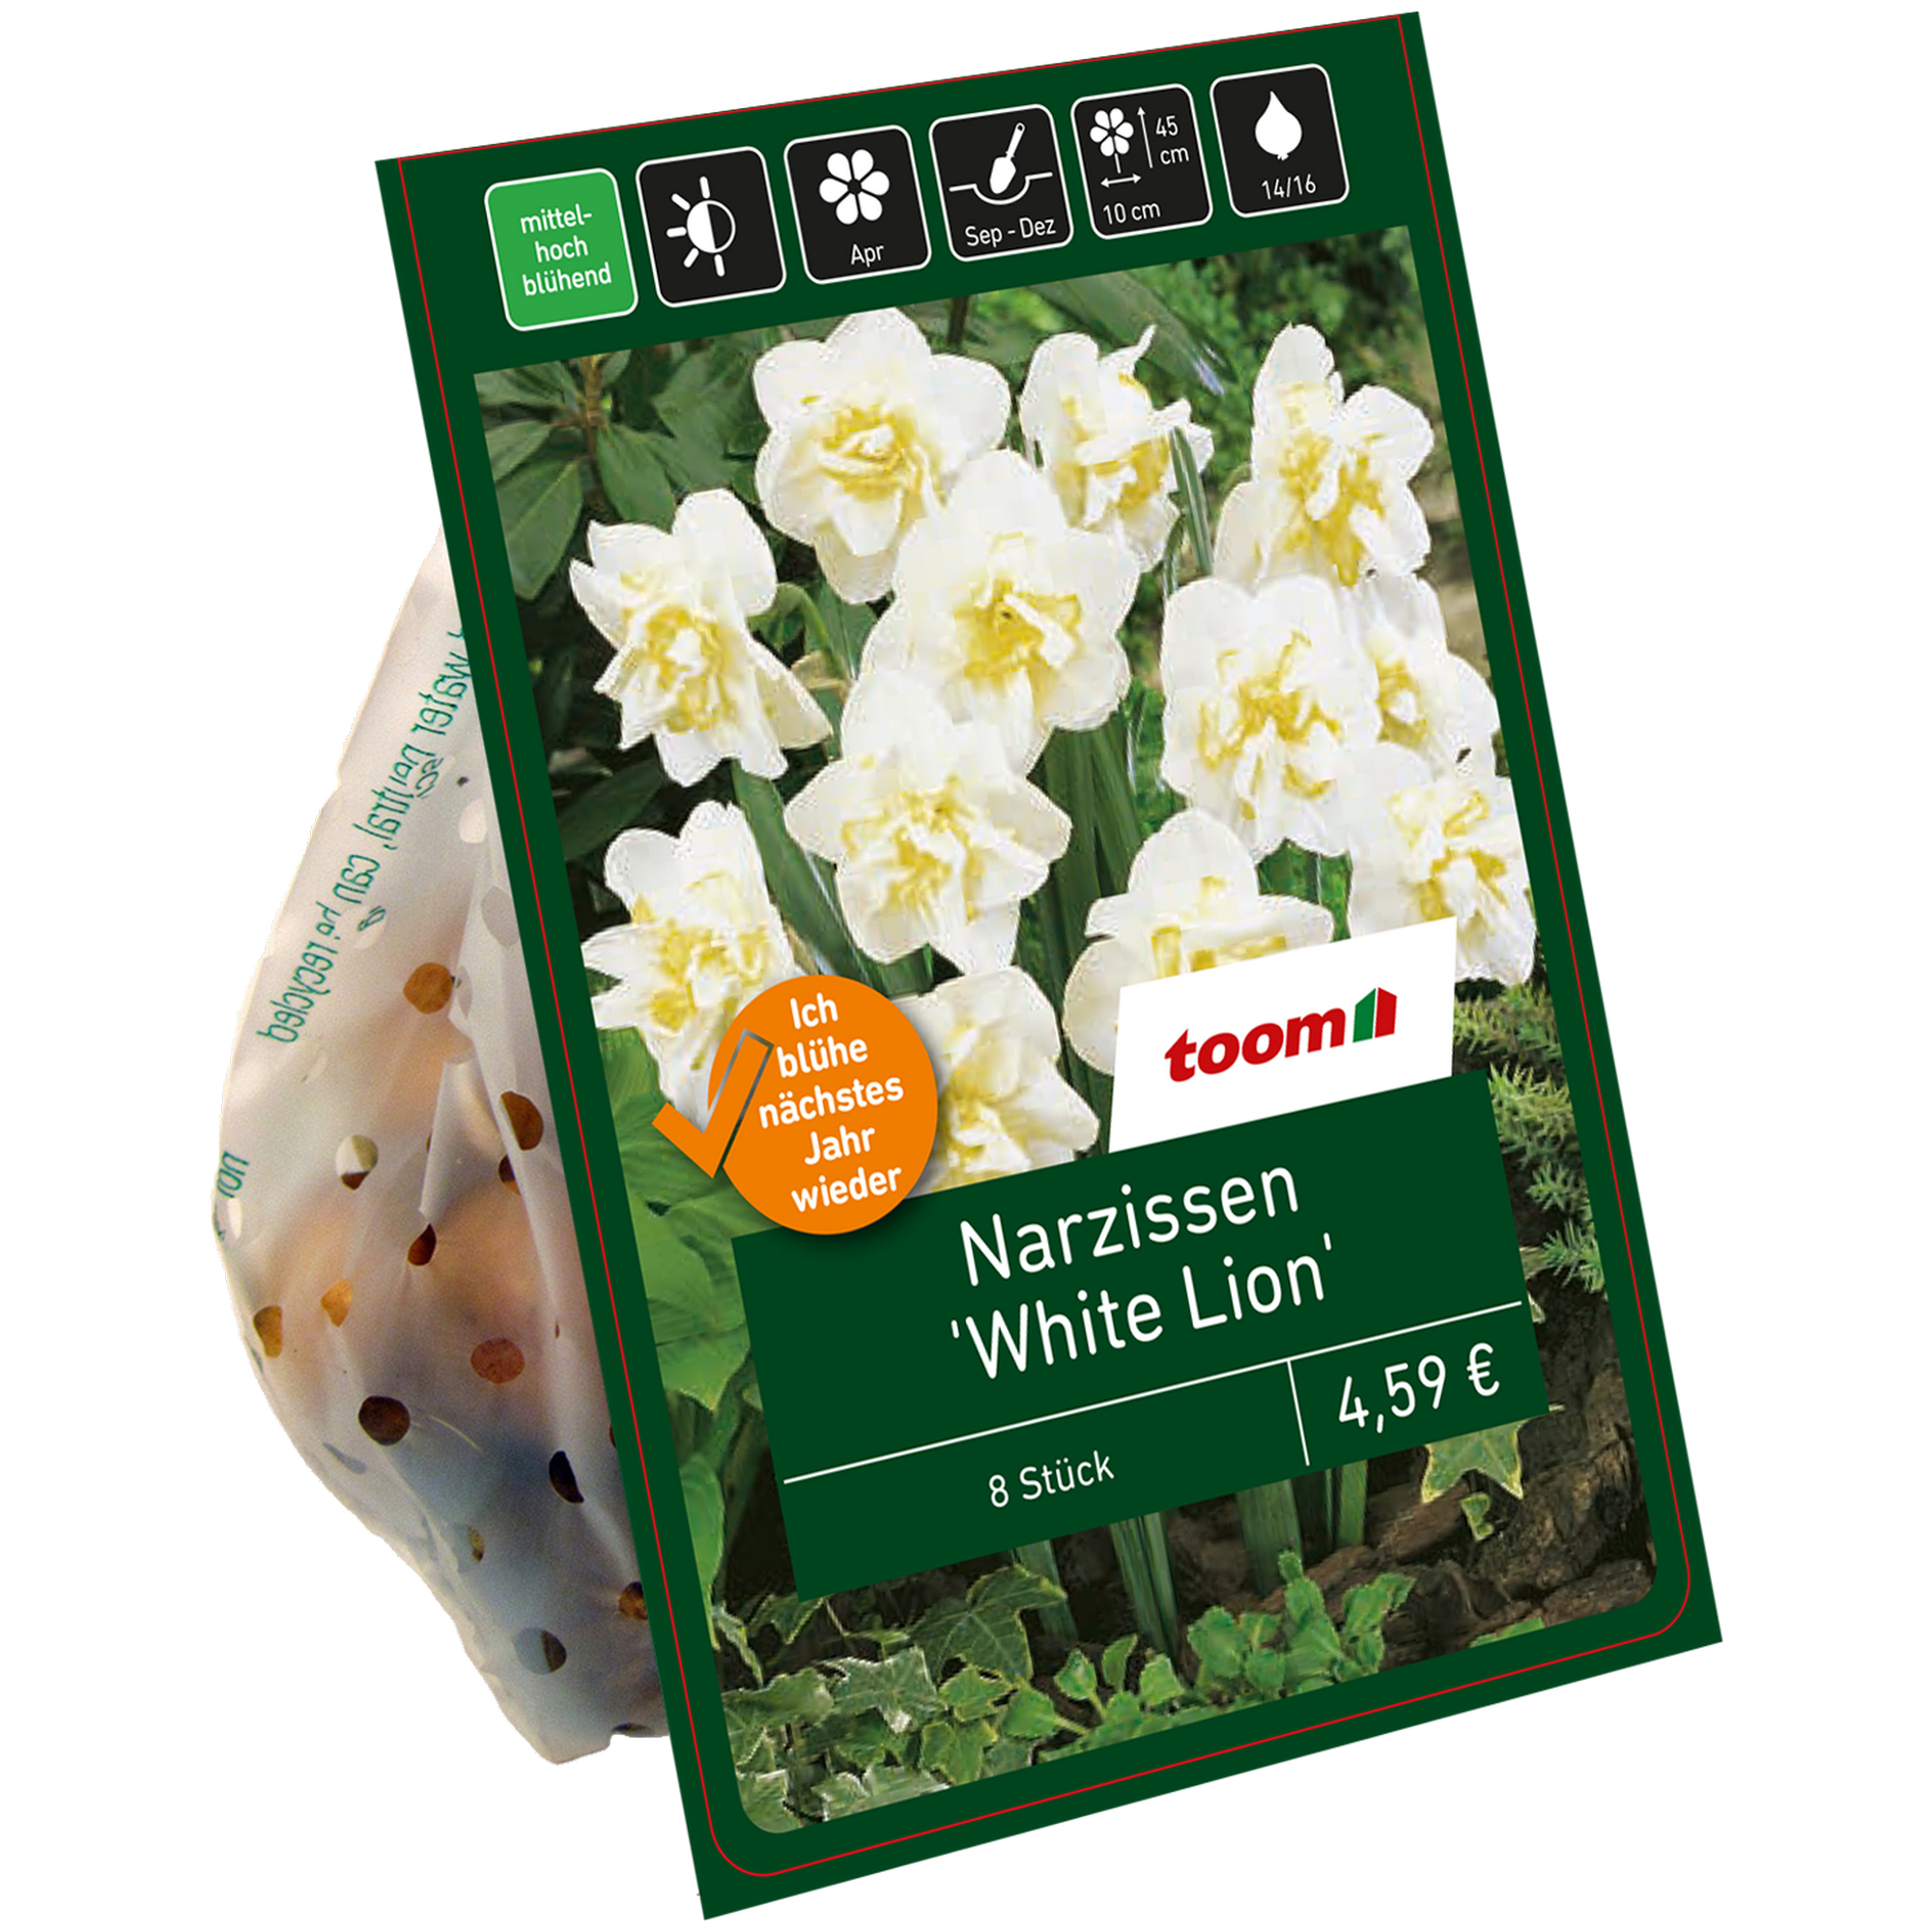 Gefüllte Narzissen 'White Lion' weiß-gelb 8 Zwiebeln + product picture